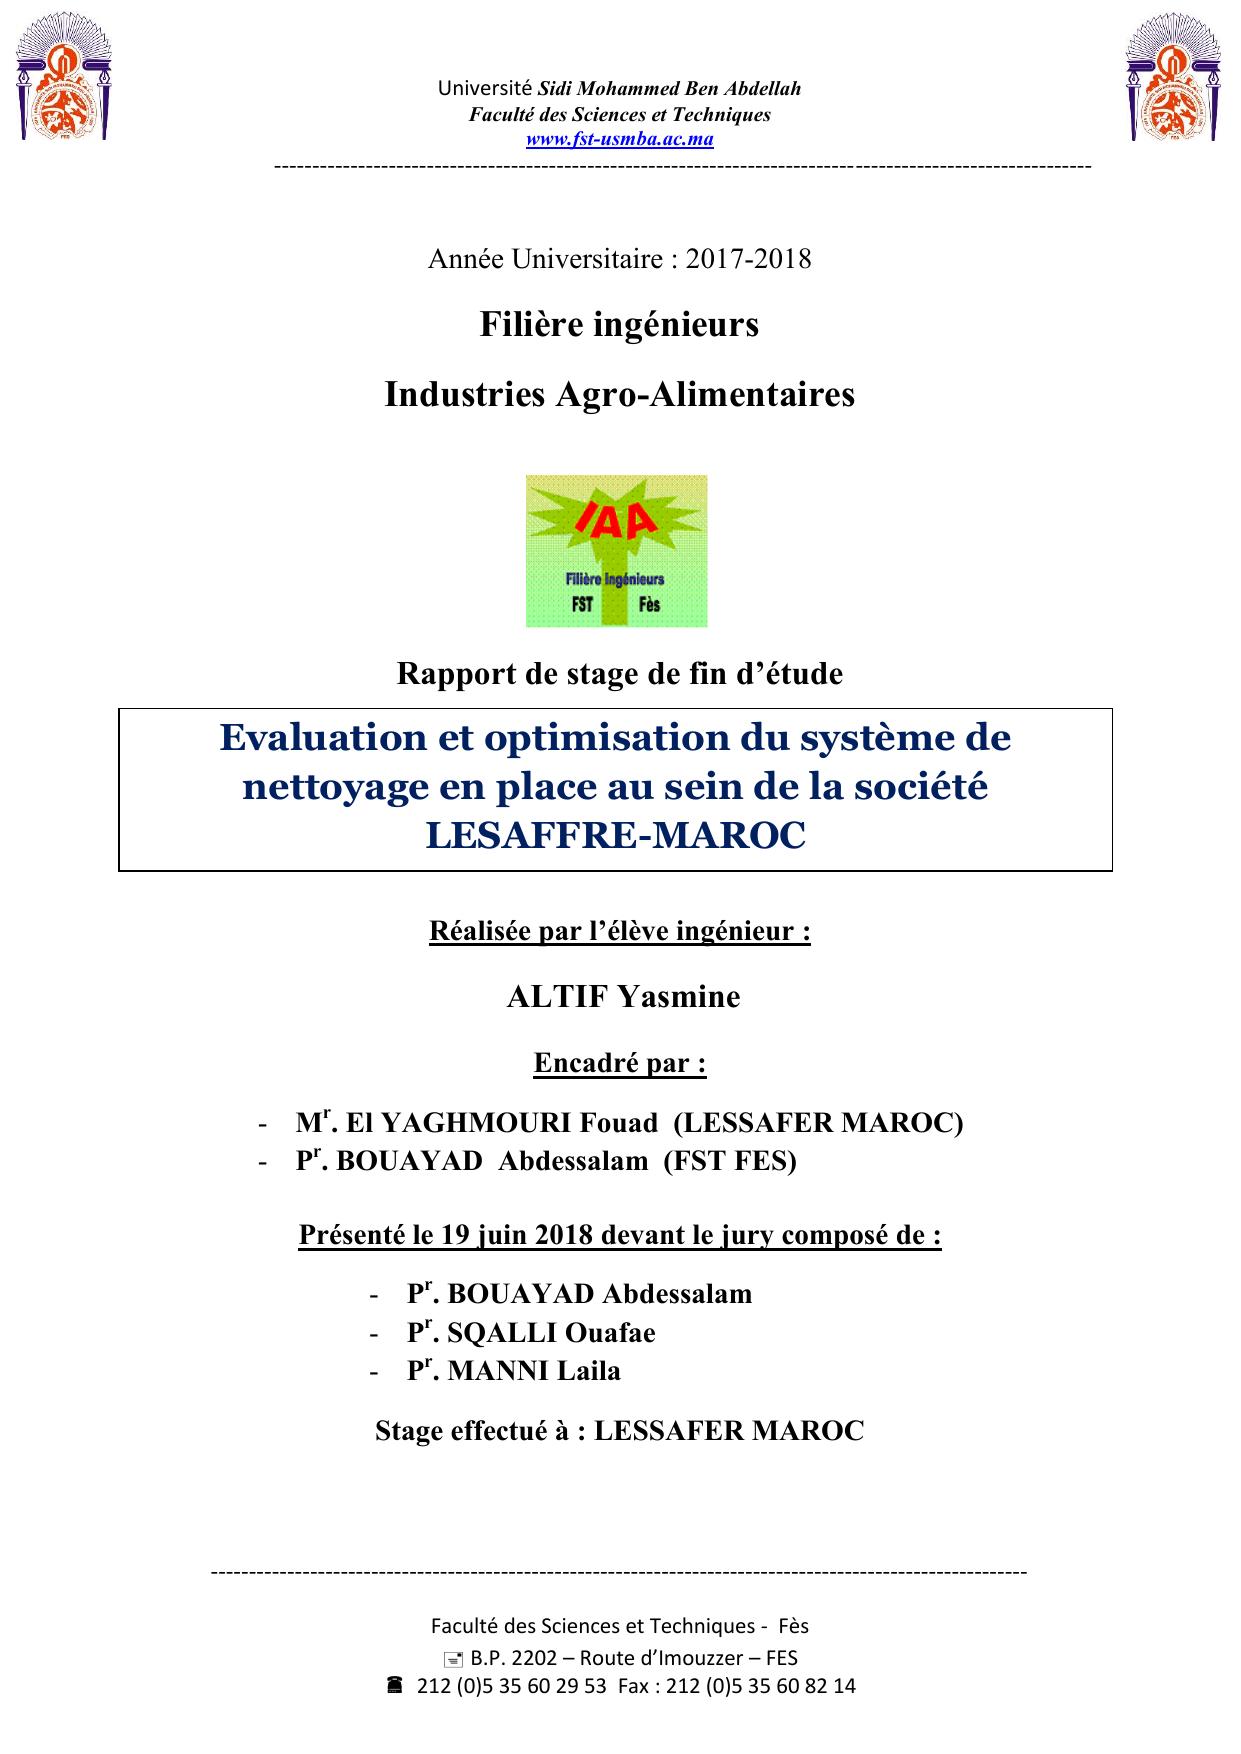 Evaluation et optimisation du système de nettoyage en place au sein de la société LESAFFRE-MAROC